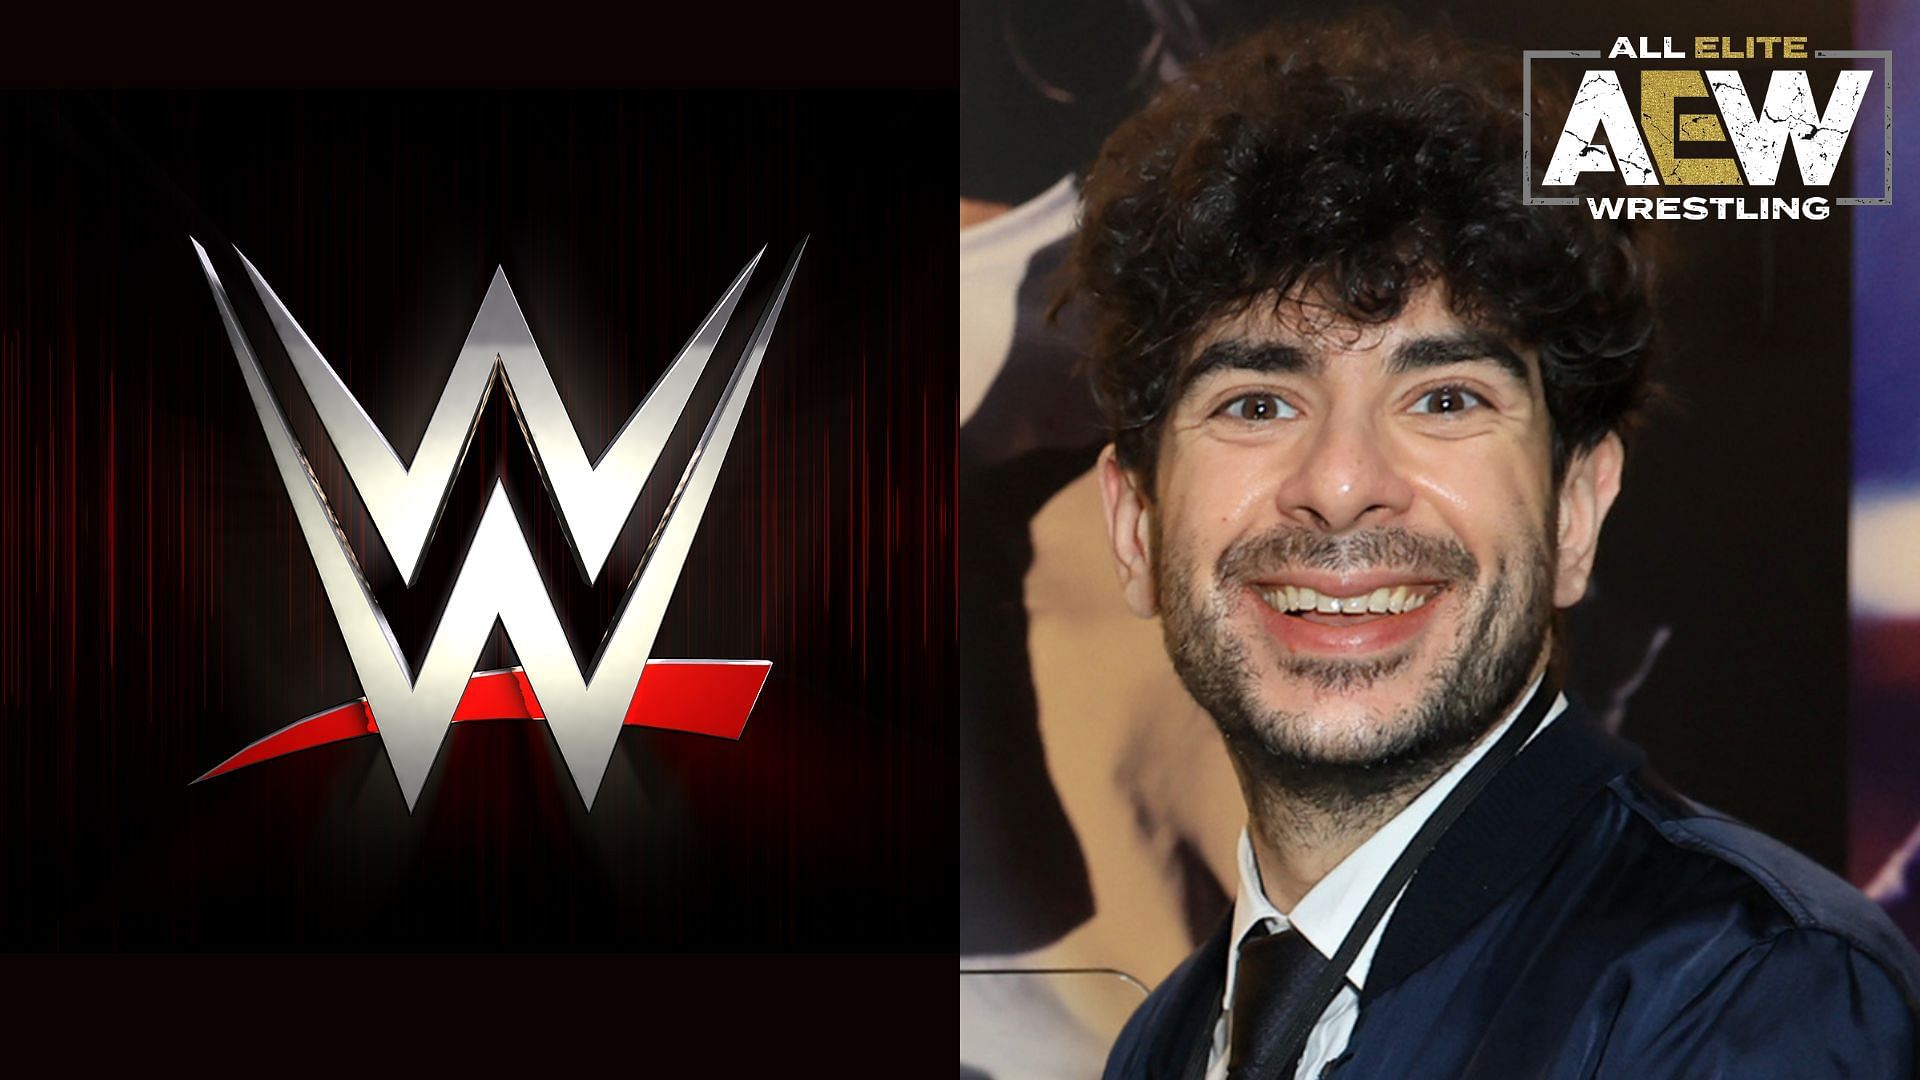 WWE logo (left), Tony Khan (right)